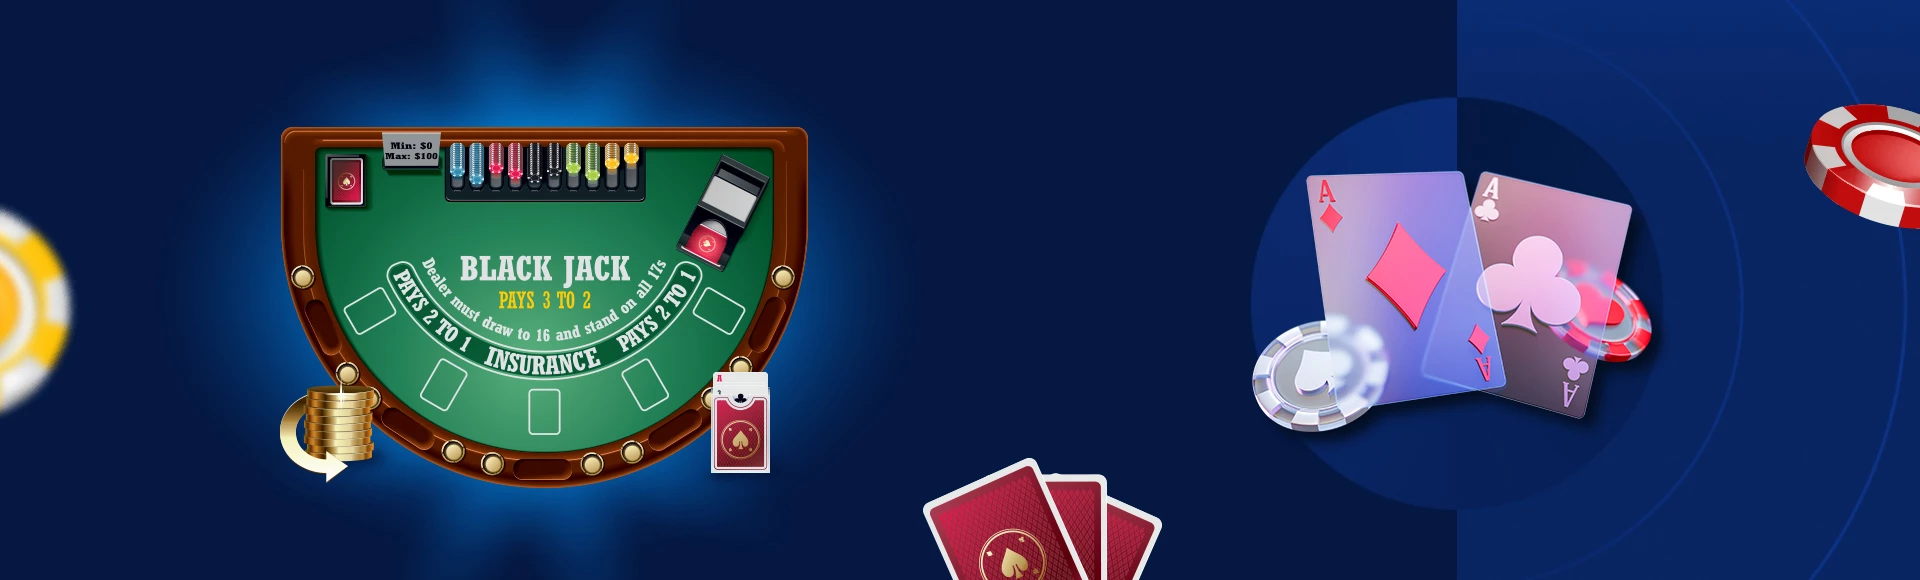 Blackjack gids door Casino Genie design image